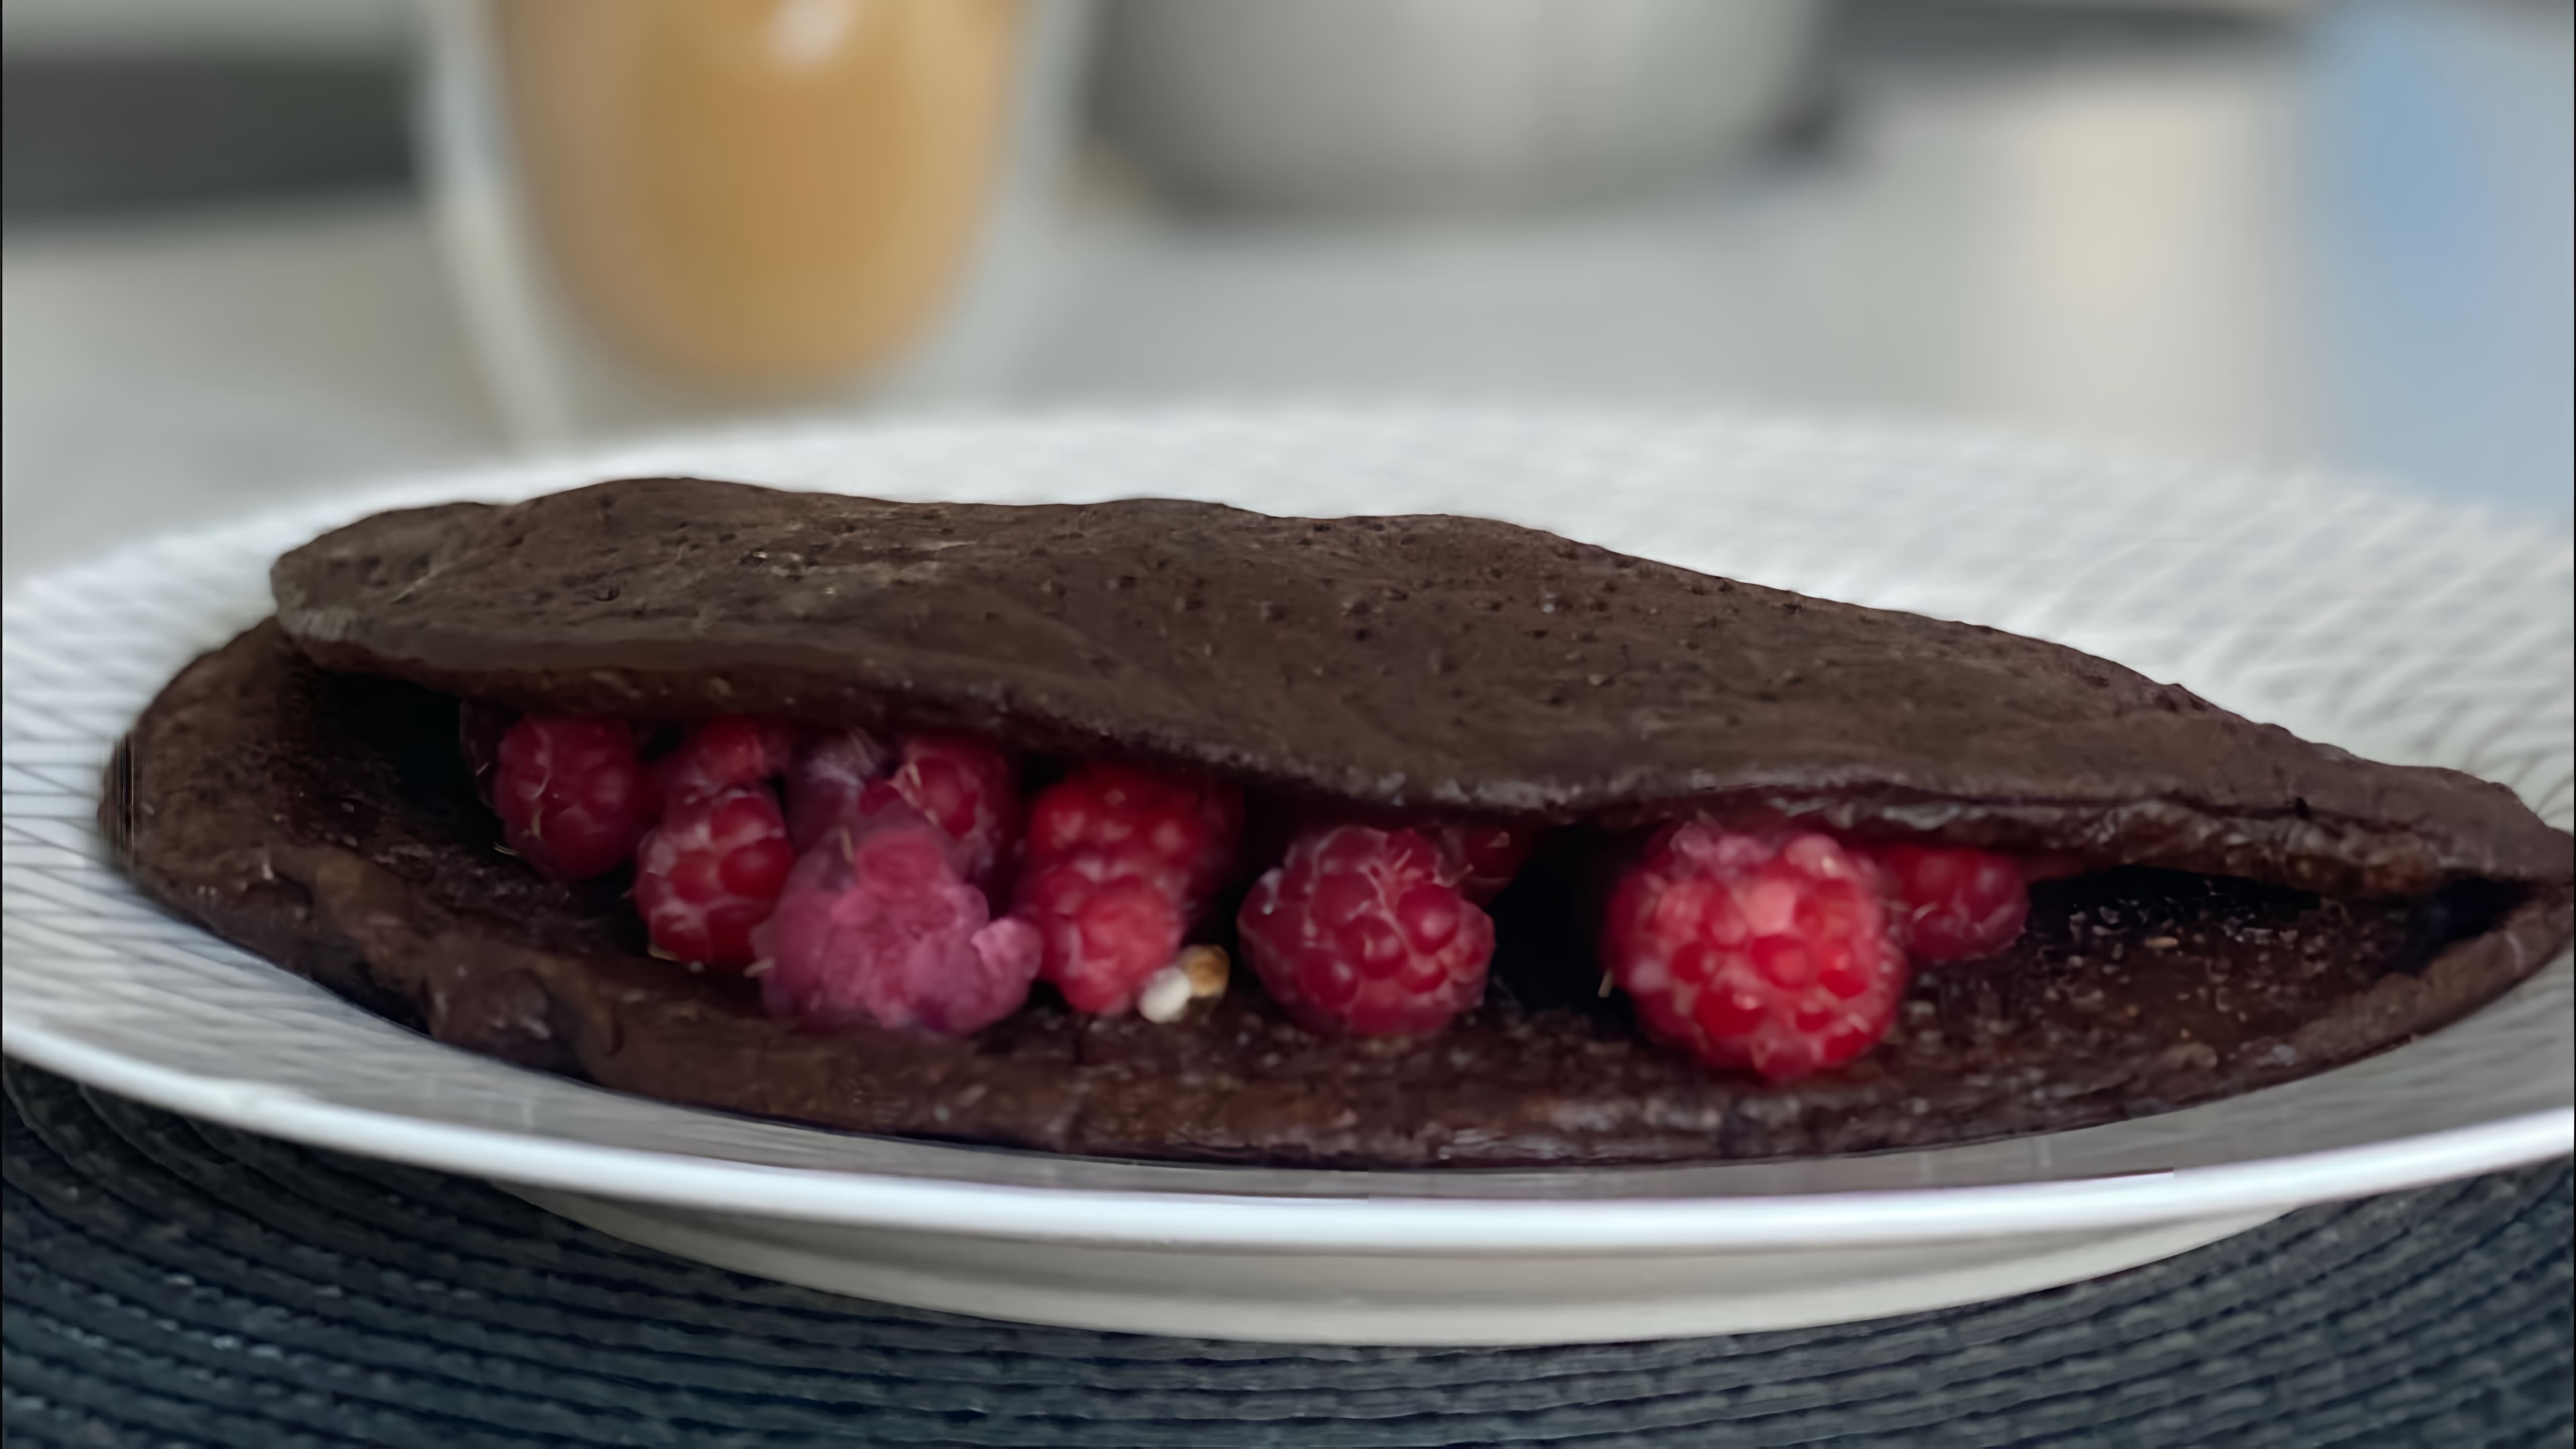 В этом видео демонстрируется рецепт шоколадно-овсяного блина с ягодами